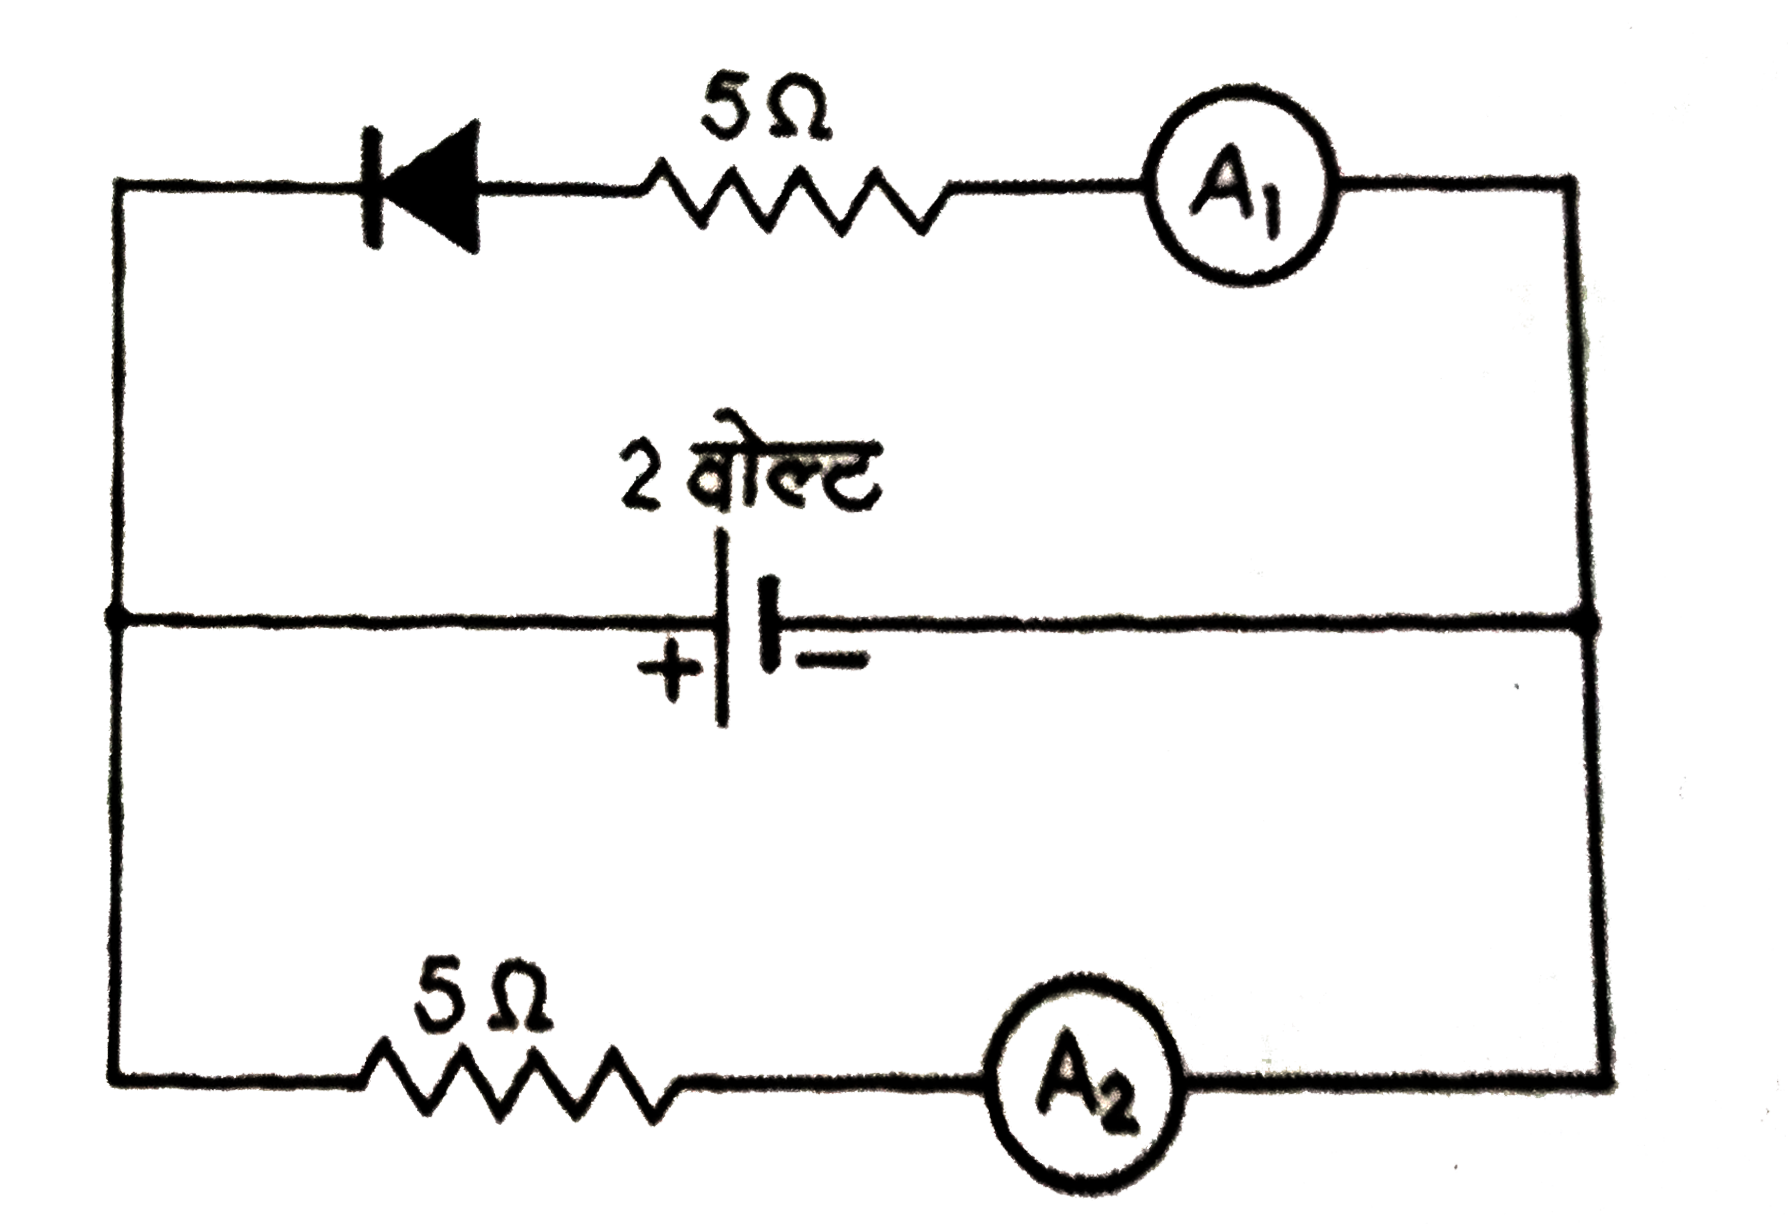 चित्र में प्रदर्शित अमीटर A (1 ) तथा  A (2 )  से मापी गई वैद्युत धाराएँ क्या हैं, यदि उनके प्रतिरोध नगण्य तथा p - n सन्धि डायोड आदर्श  हों ?